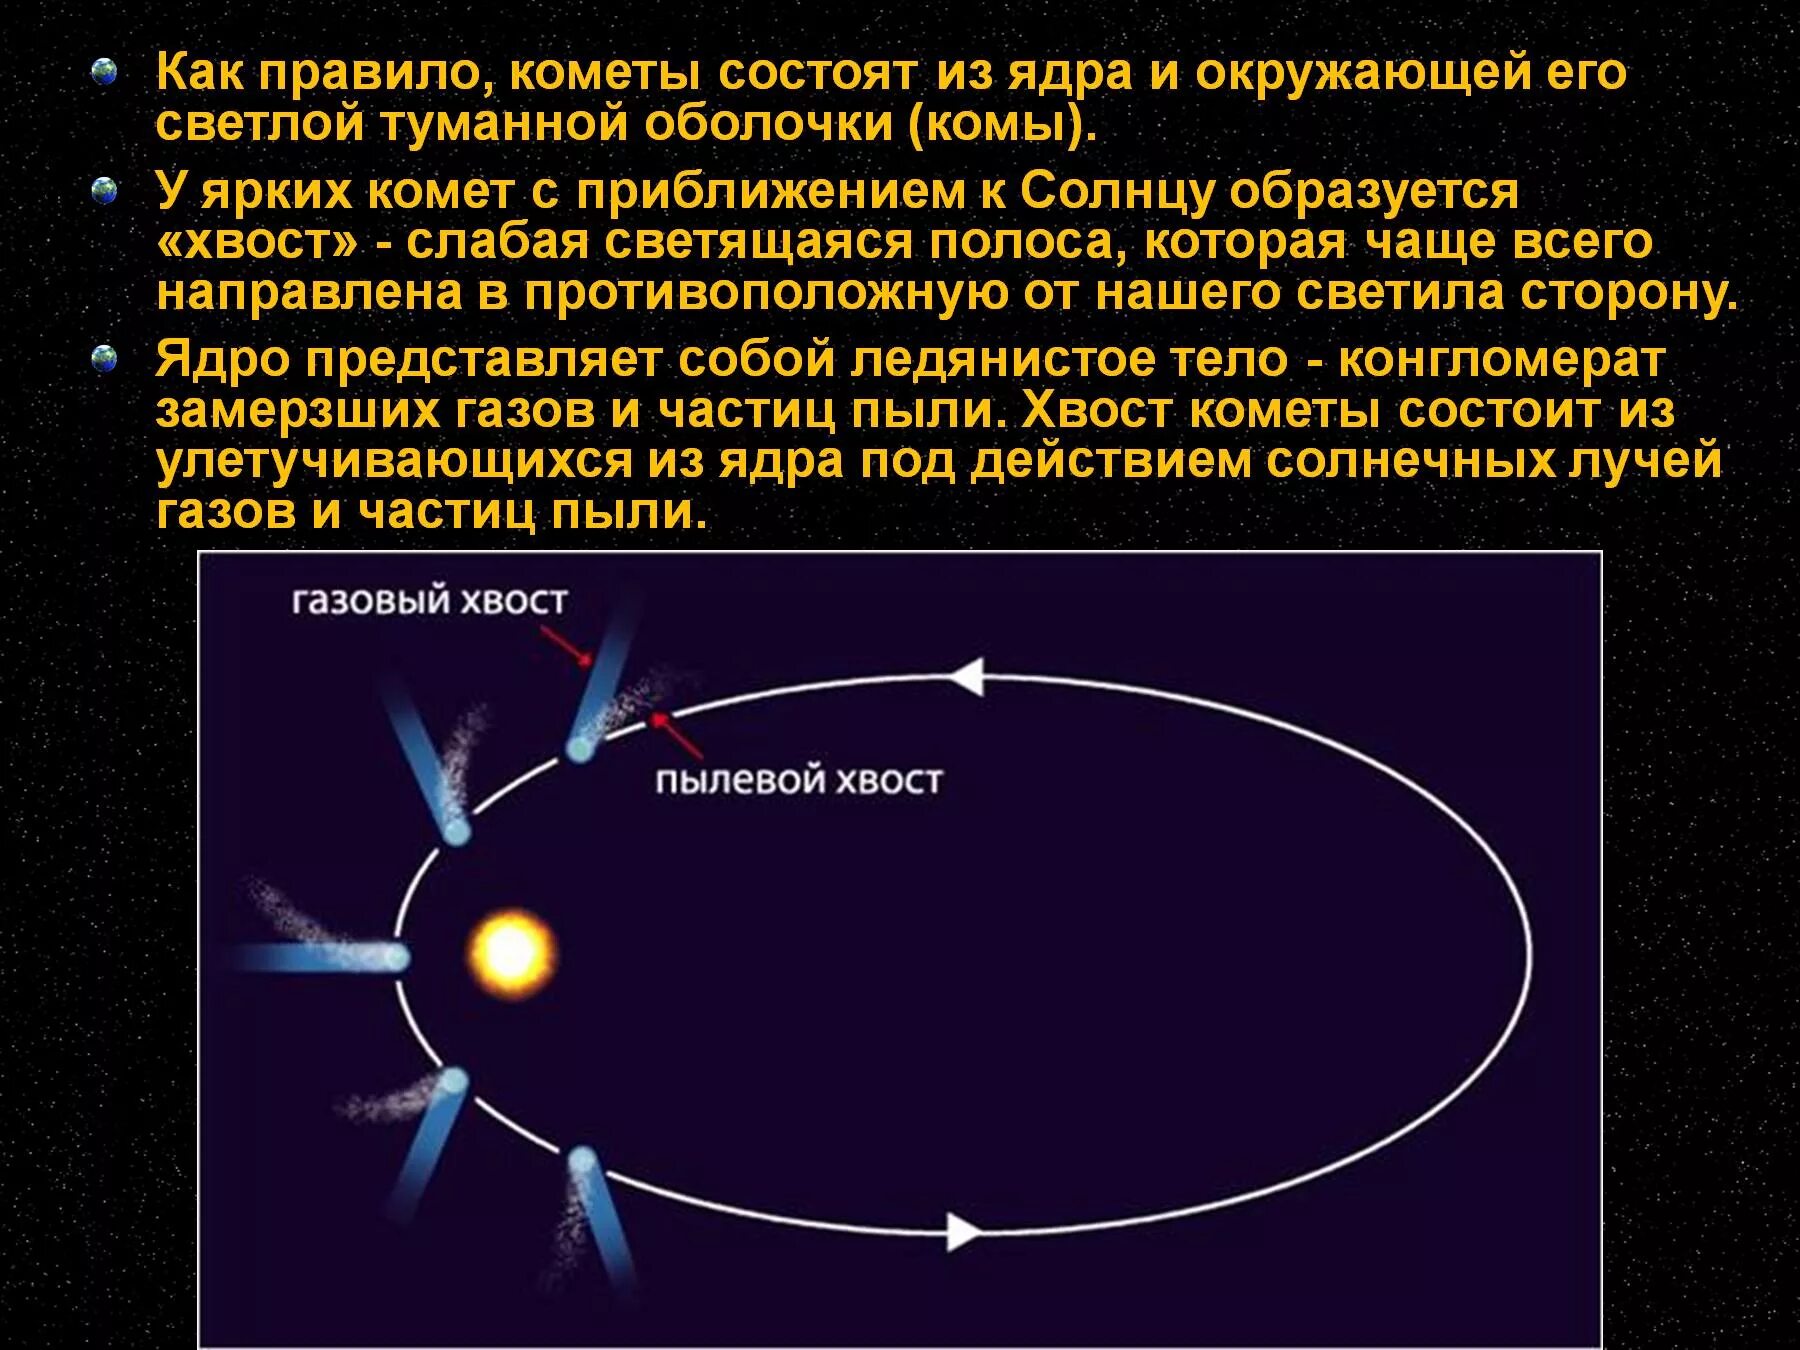 Кометы презентация по астрономии. Хвост кометы состоит. Как образуется хвост кометы. Газовый хвост кометы.